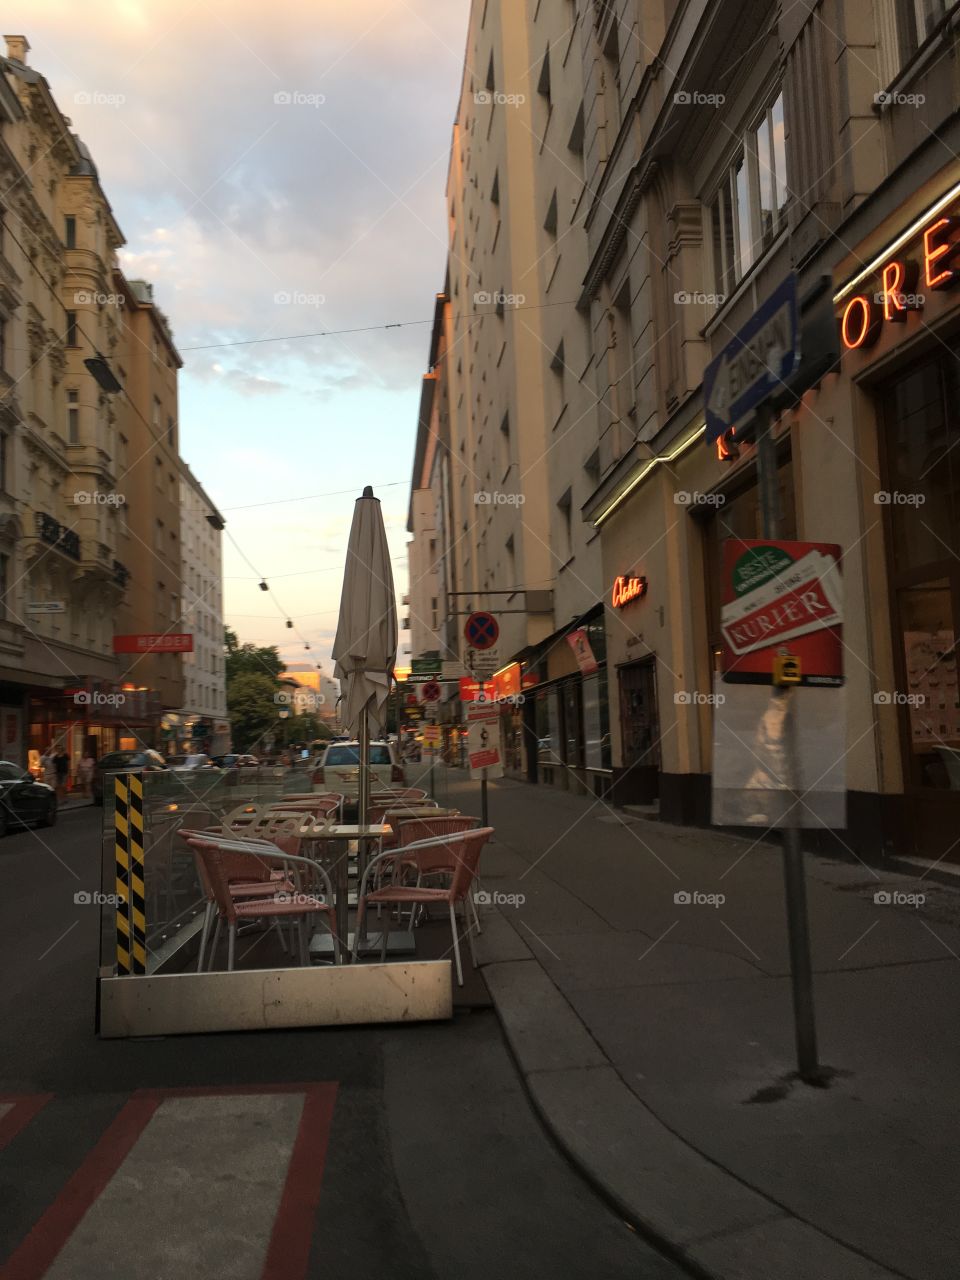 Vienna in the evening